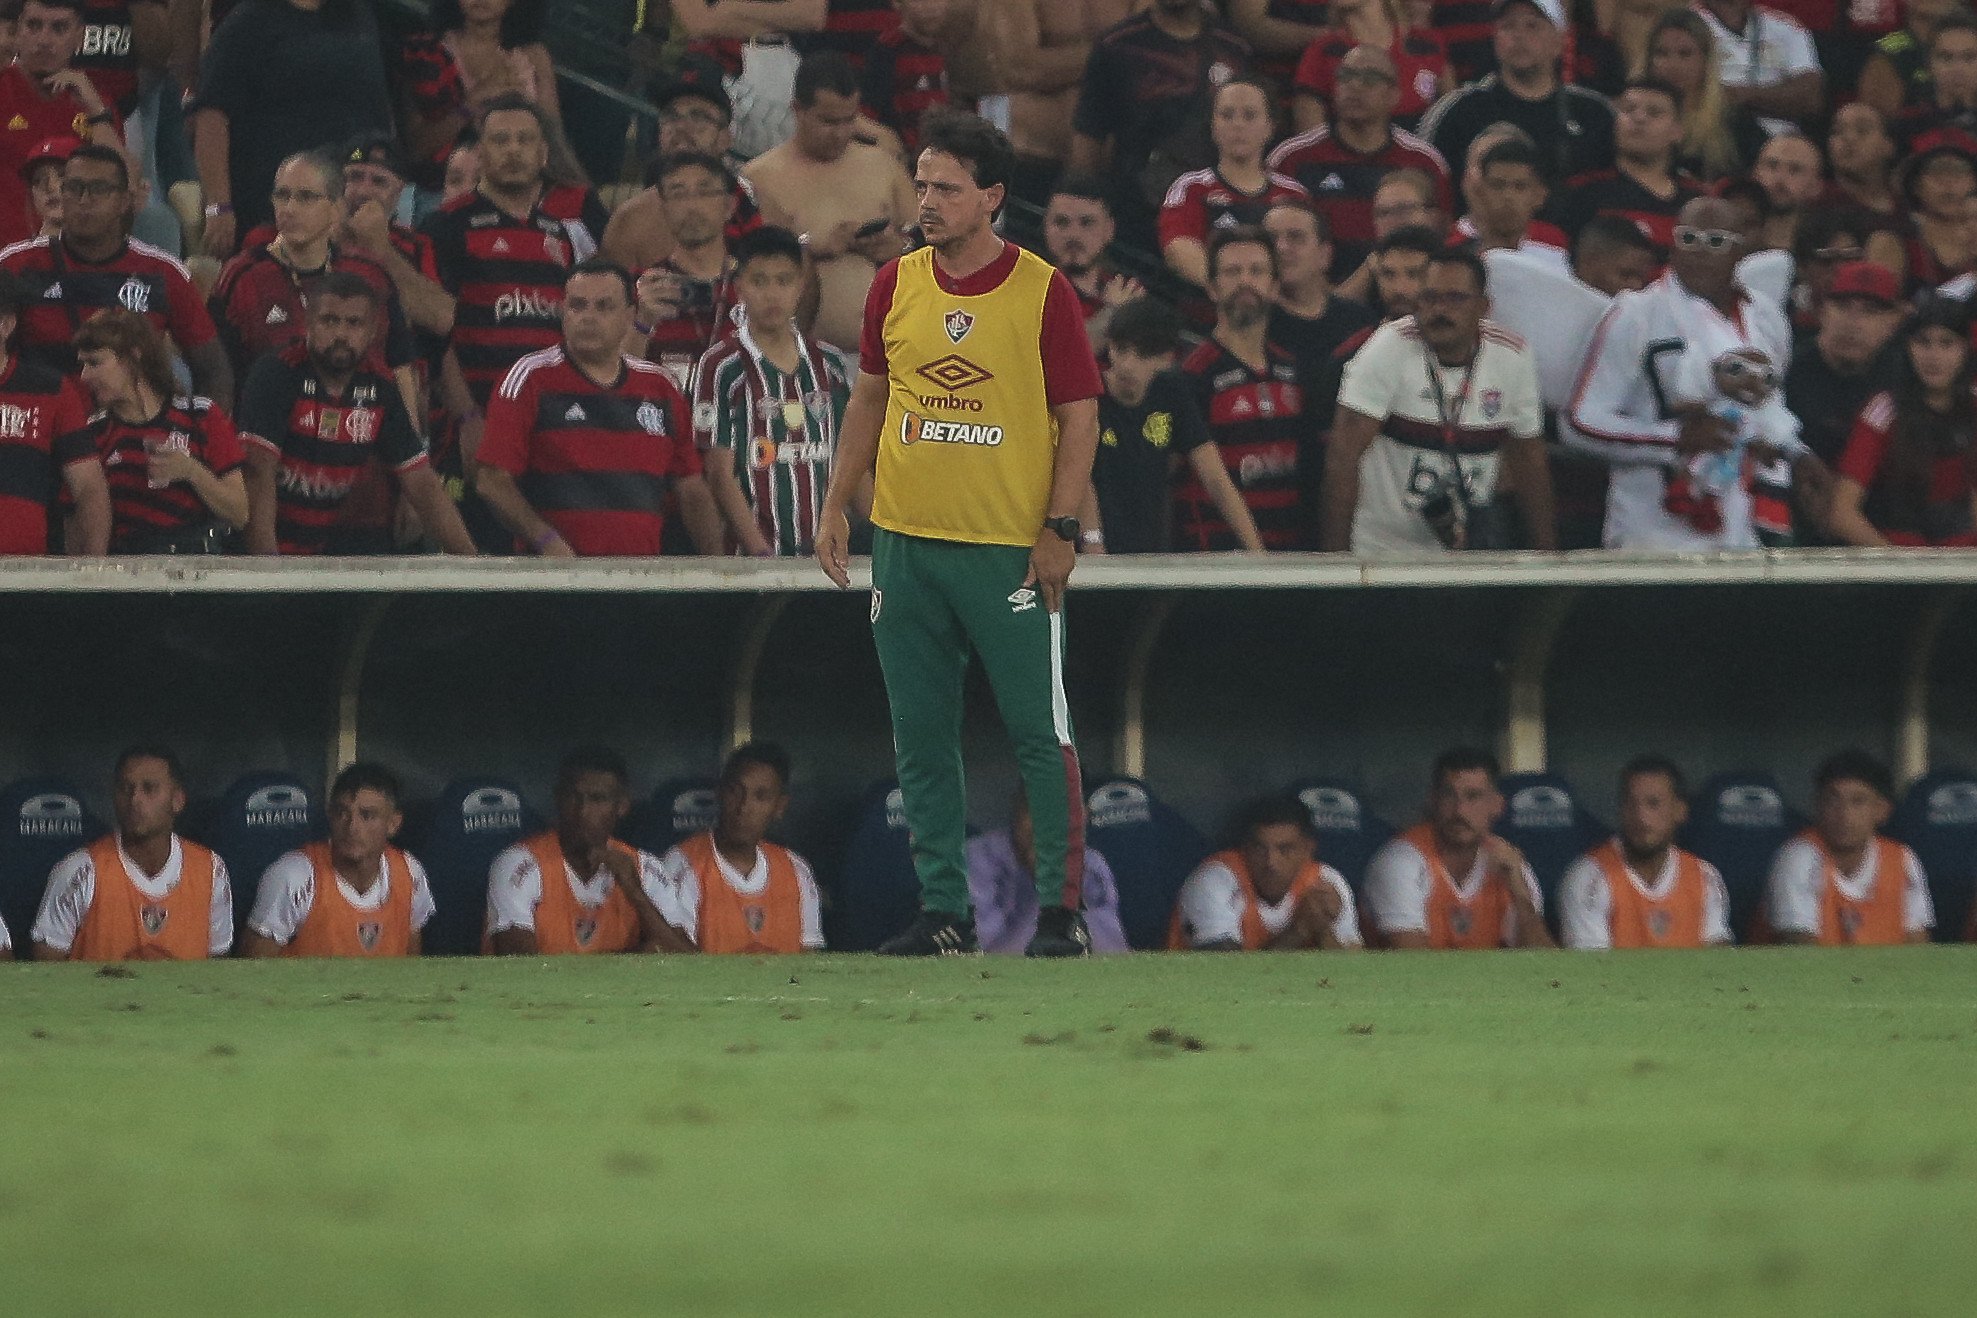 fernando diniz se irrita com críticas após eliminação do fluminense no carioca: 'falsos tricolores'